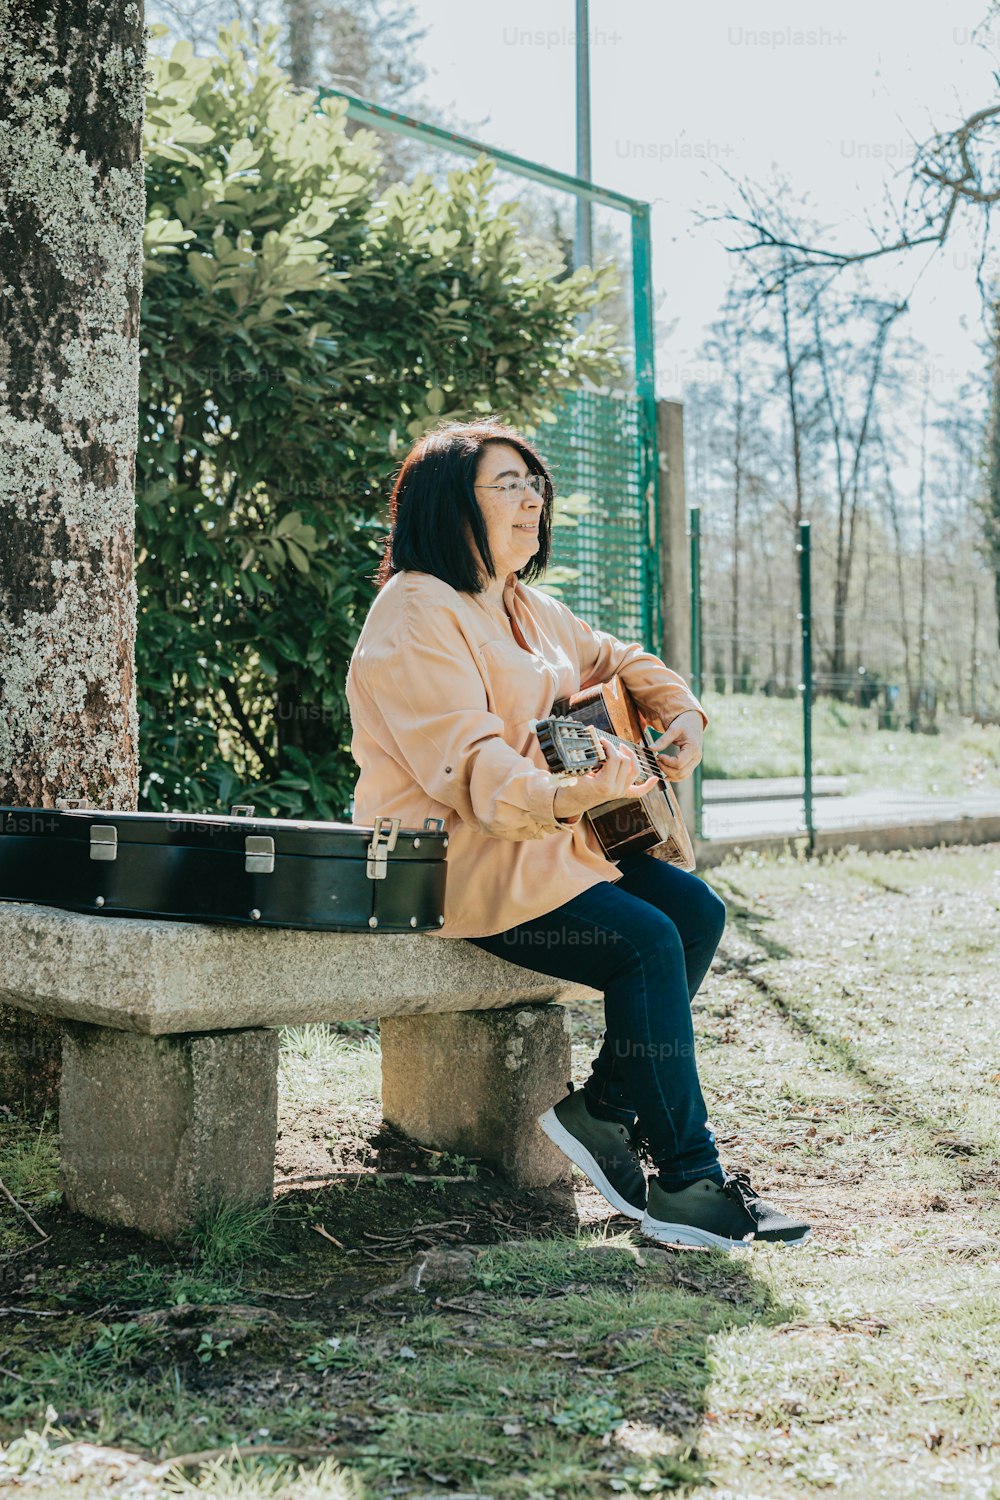 Eine Frau sitzt auf einer Zementbank und hält eine Gitarre in der Hand